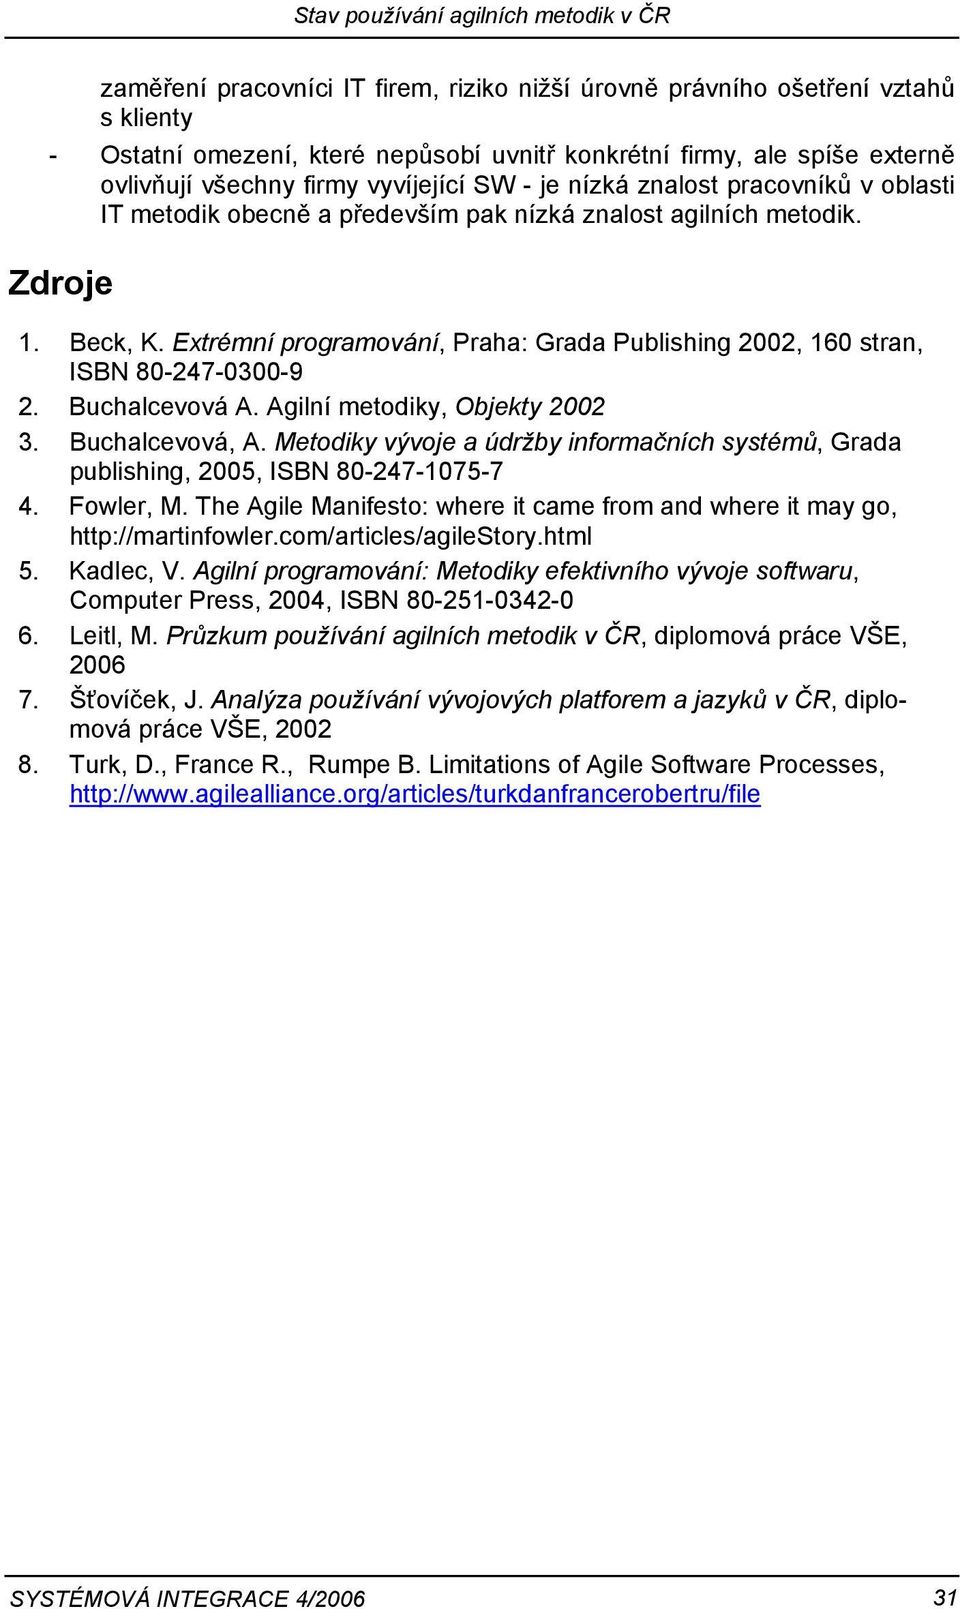 Extrémní programování, Praha: Grada Publishing 2002, 160 stran, ISBN 80-247-0300-9 2. Buchalcevová A. Agilní metodiky, Objekty 2002 3. Buchalcevová, A.